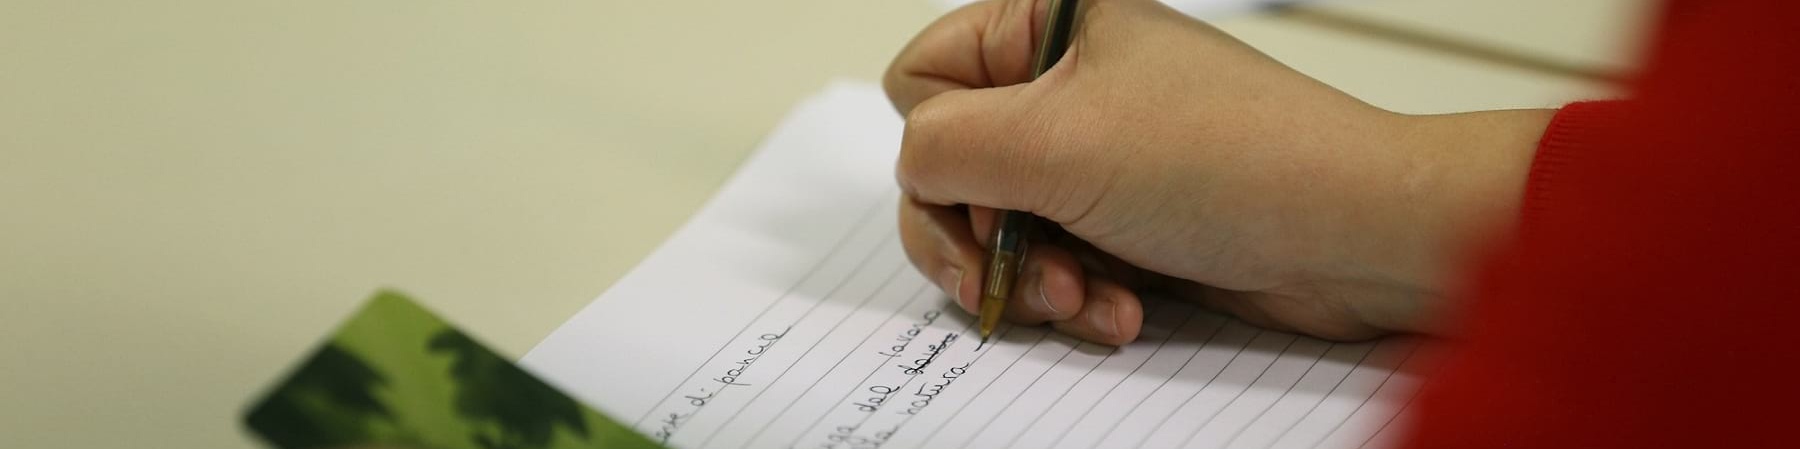 Mani di donna adulta scrivono con una penna su un quaderno. La persona indossa una maglia rossa